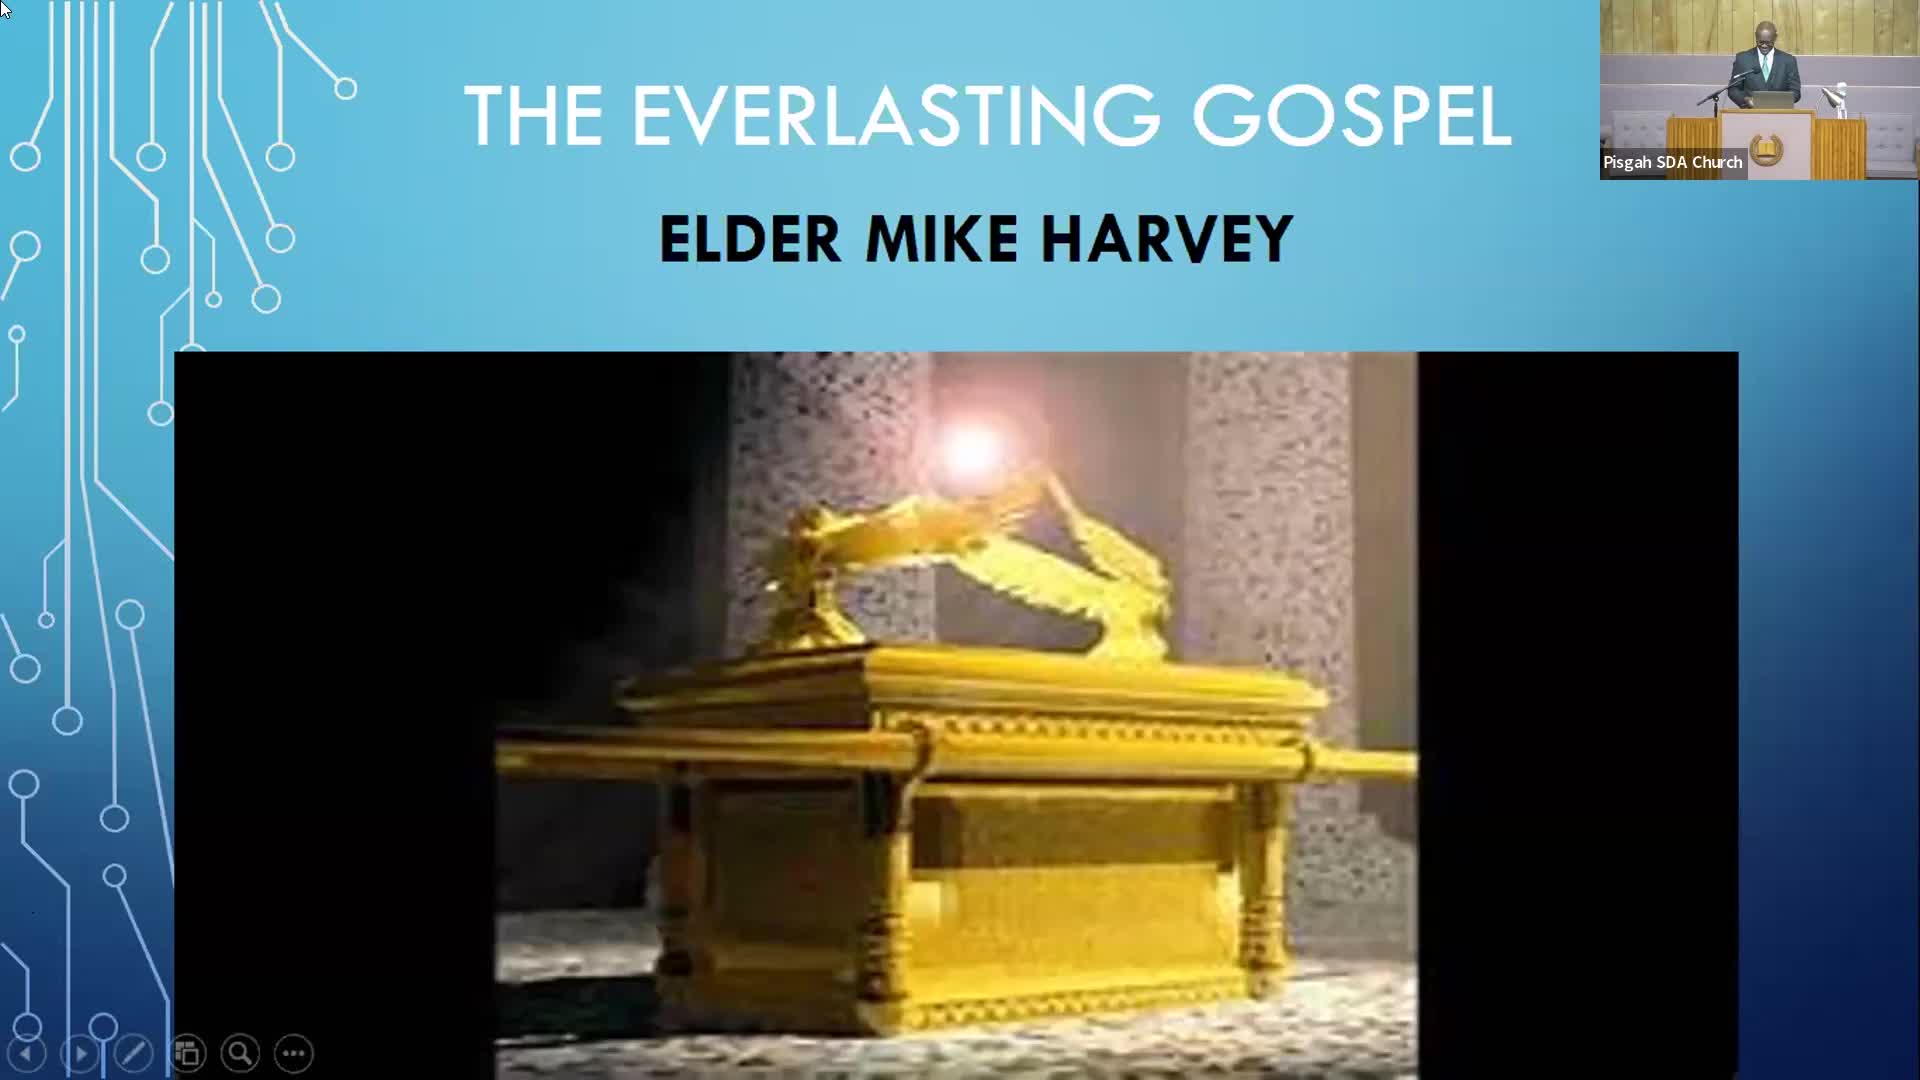 The Everlasting Gospel